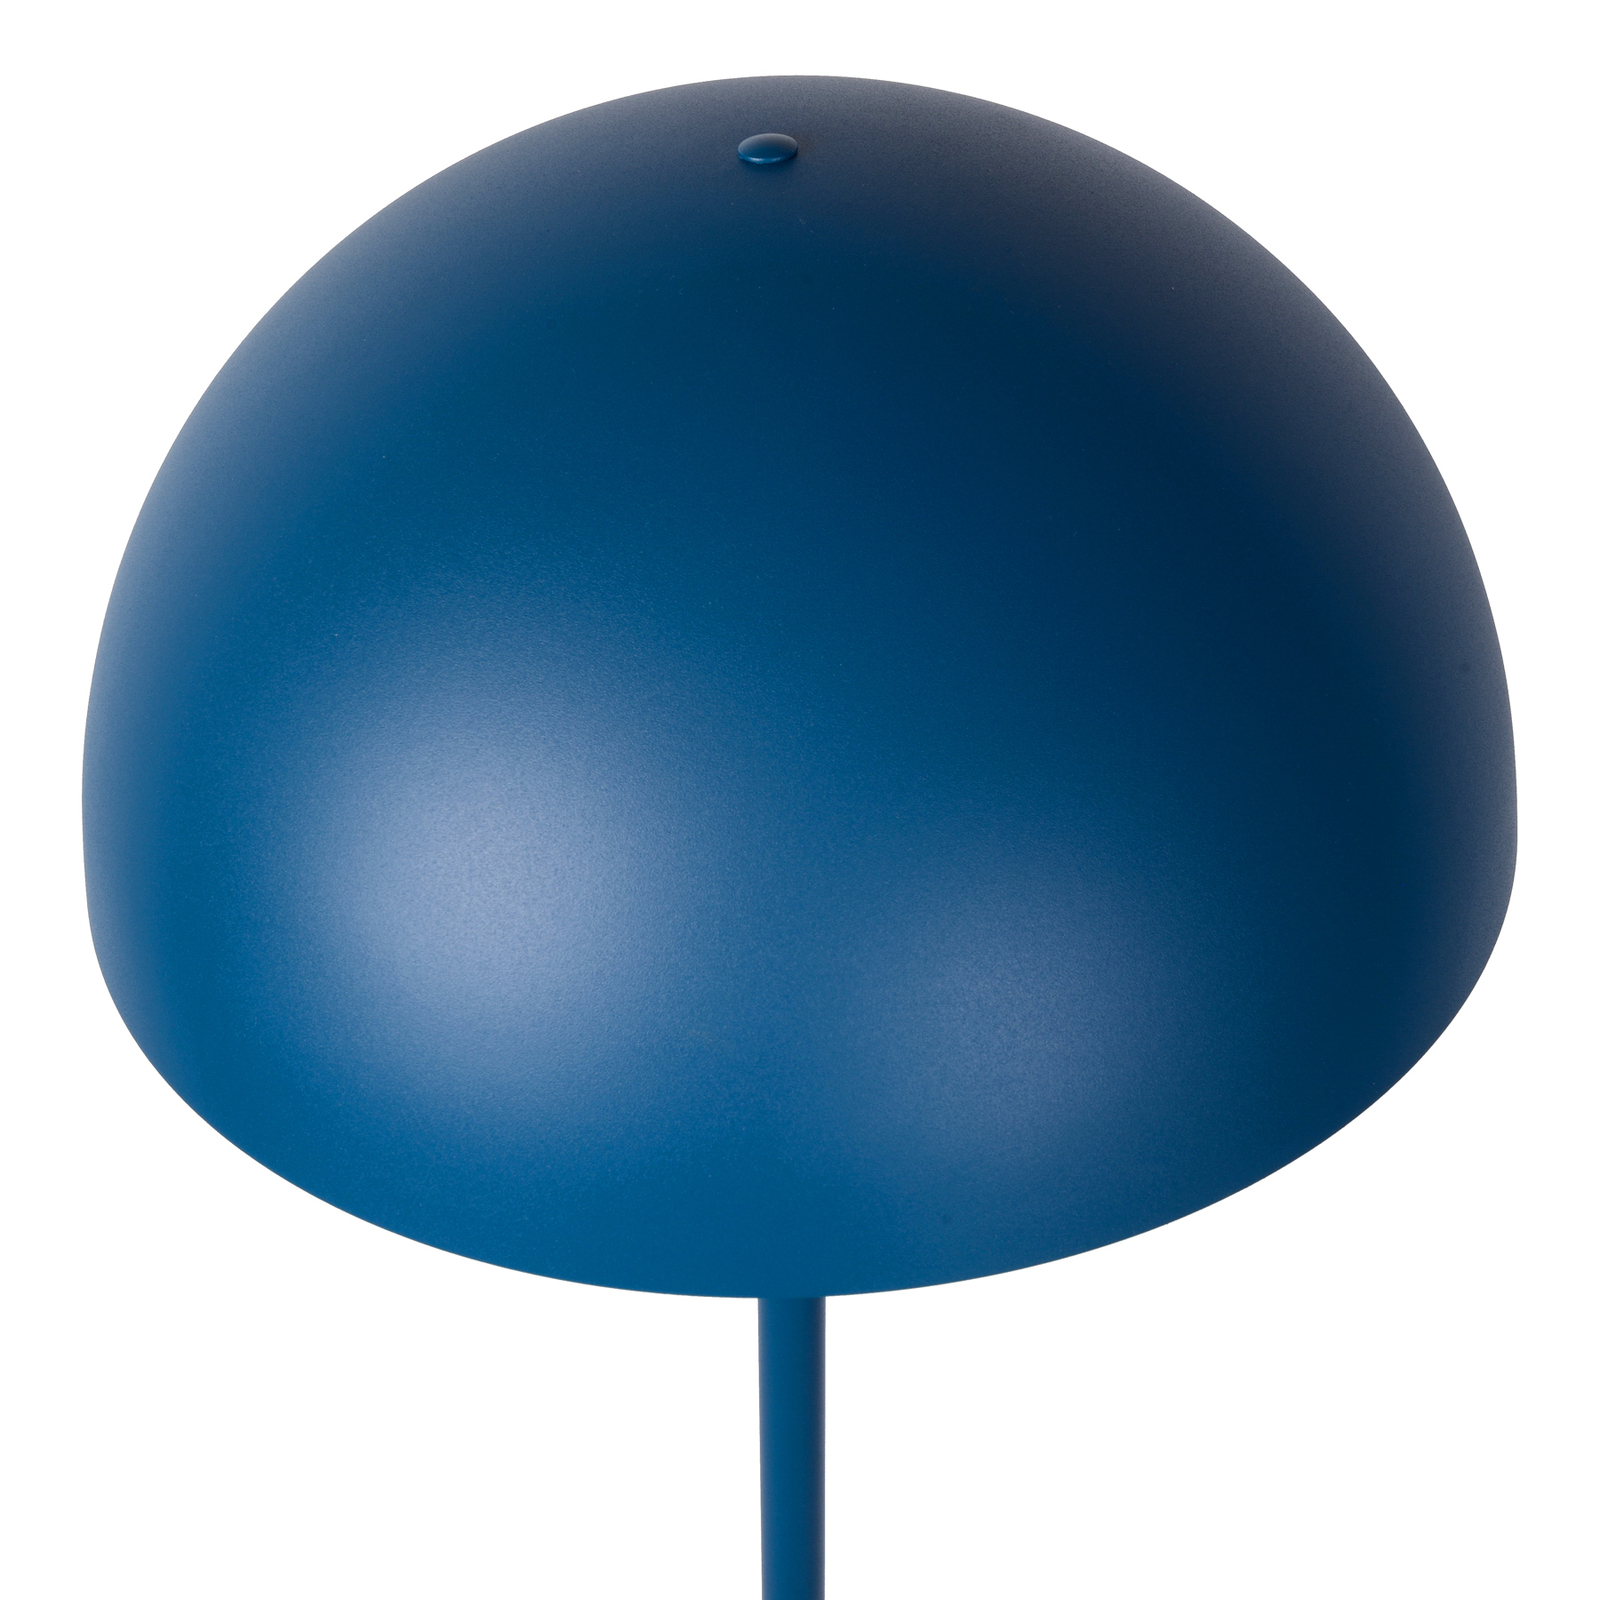 Siemon floor lamp made of steel, Ø 35 cm, blue